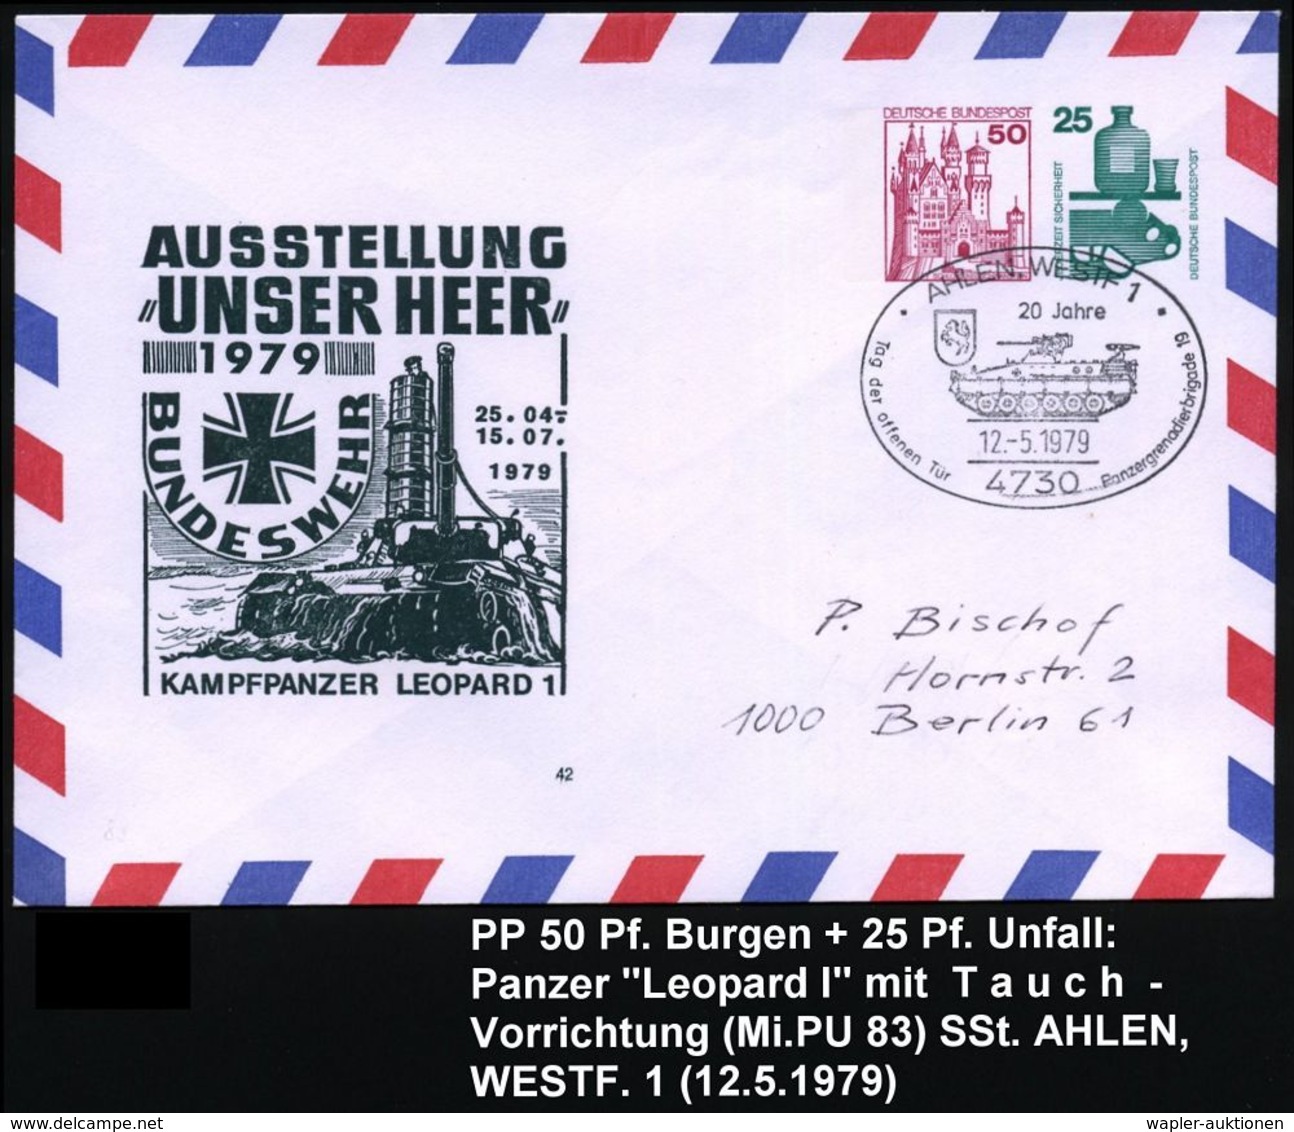 GEPANZERTE KRAFTFAHRZEUGE / PANZER : 4730 AALEN,WESTF 1/ 20 Jahre/ ..Panzergrenadierbrigade 19 1979 (12.5.) SSt = Sch.-P - Other (Earth)